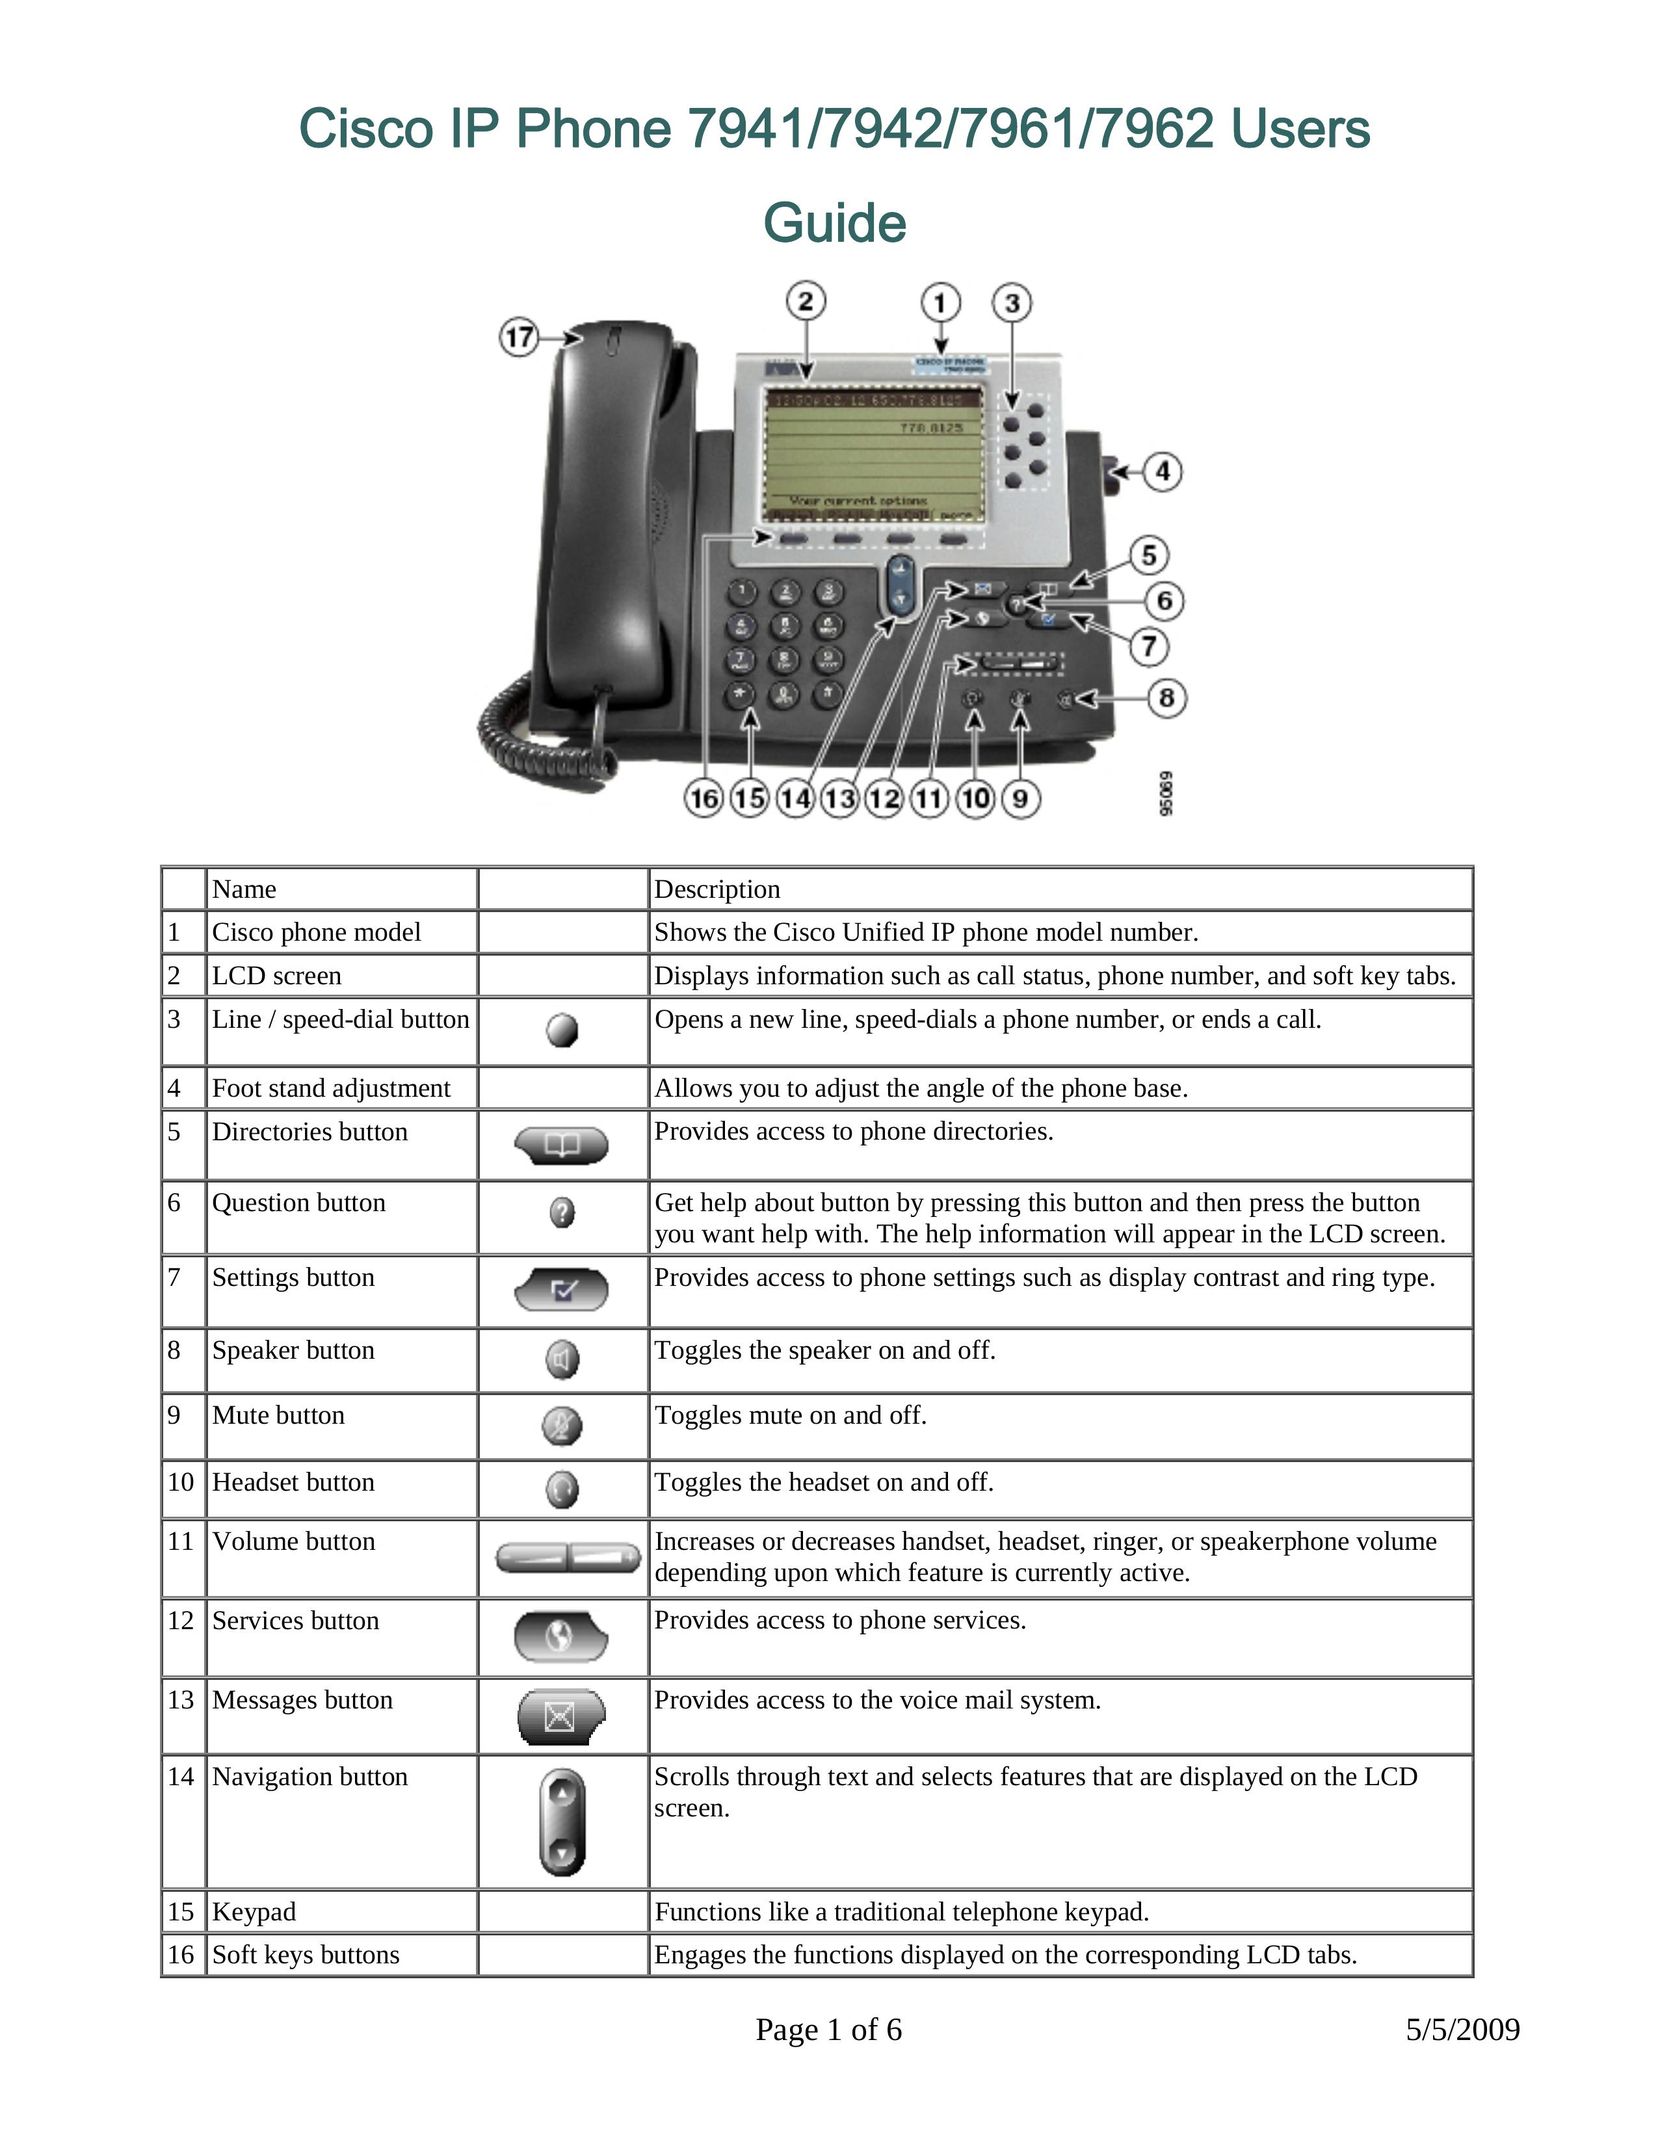 DeWalt 7941 IP Phone User Manual